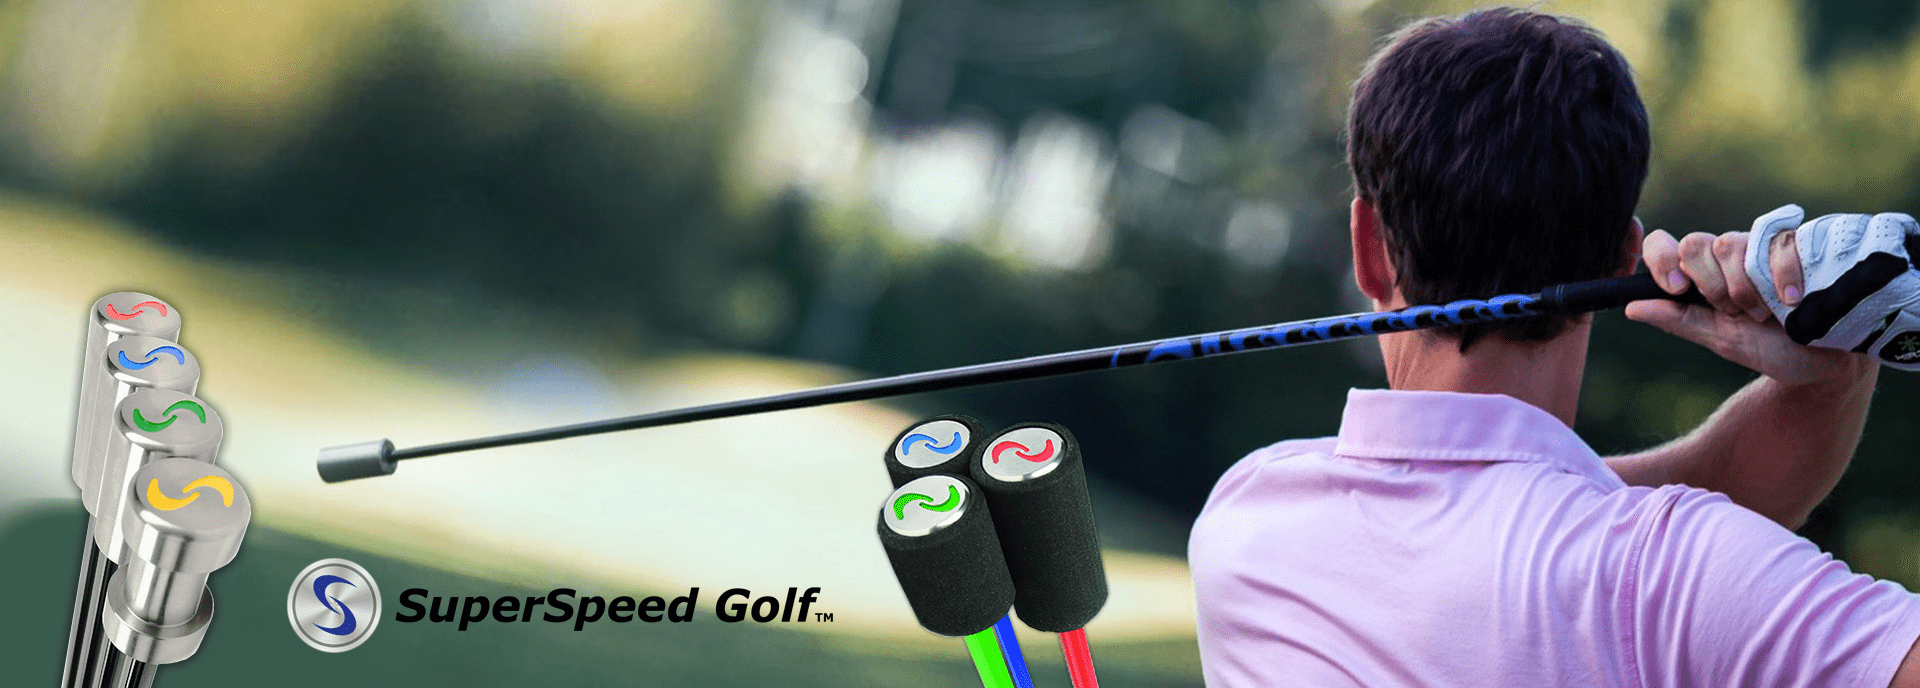 スーパースピードゴルフ SuperSpeed Golf 練習器具45インチセット内容